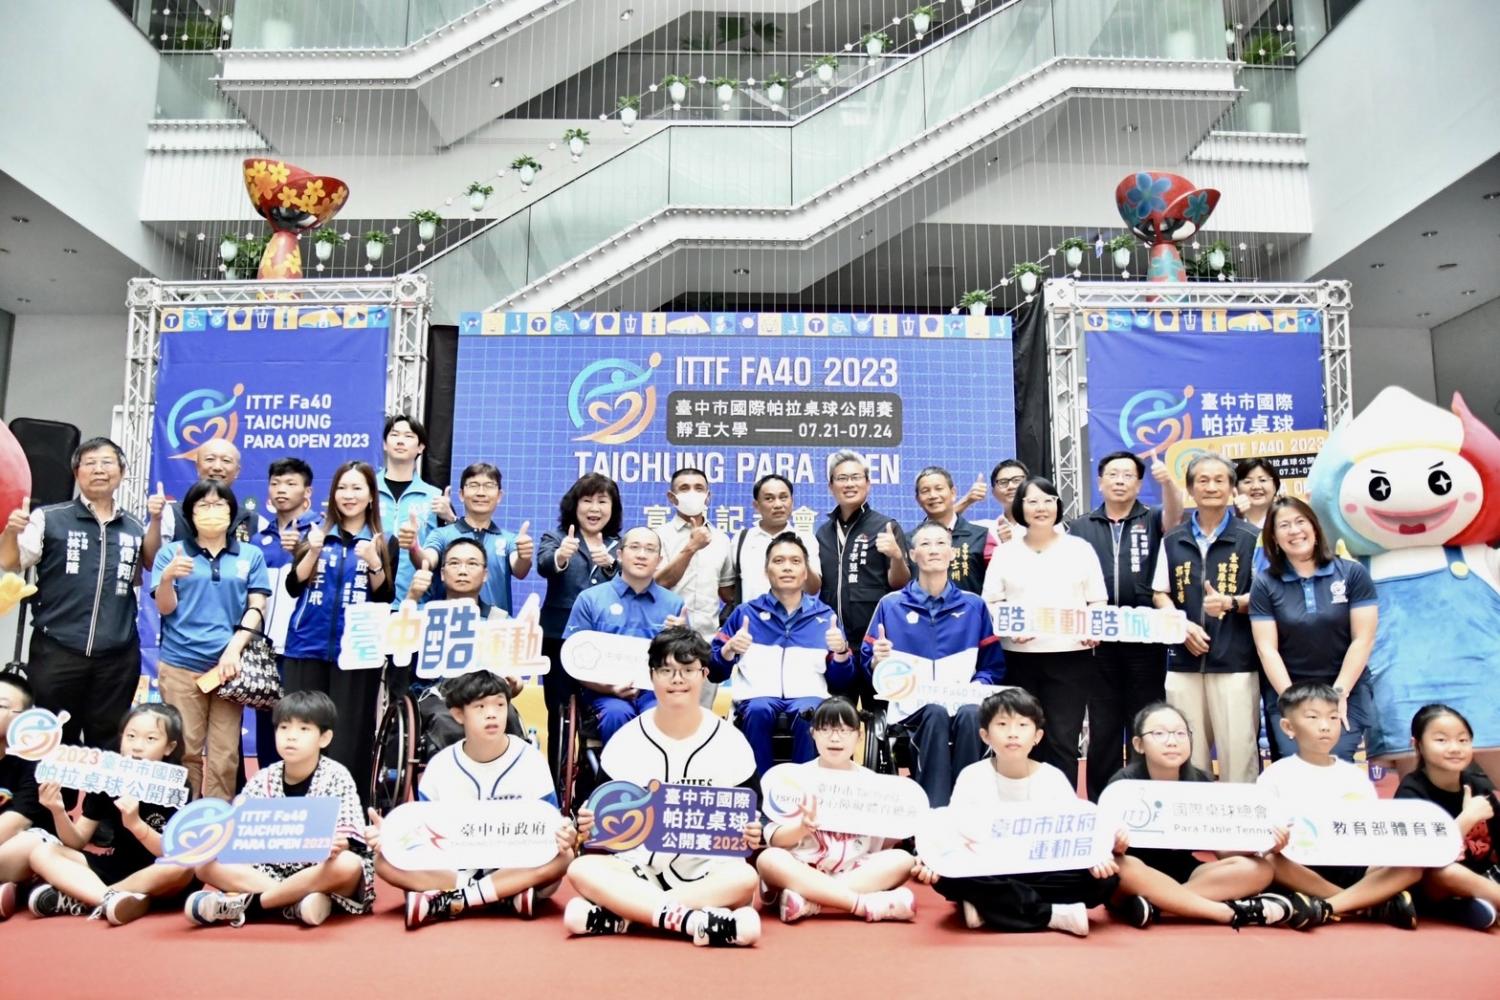 2023.07.12_「台中國際帕拉桌球公開賽」宣傳記者會，共10張圖片